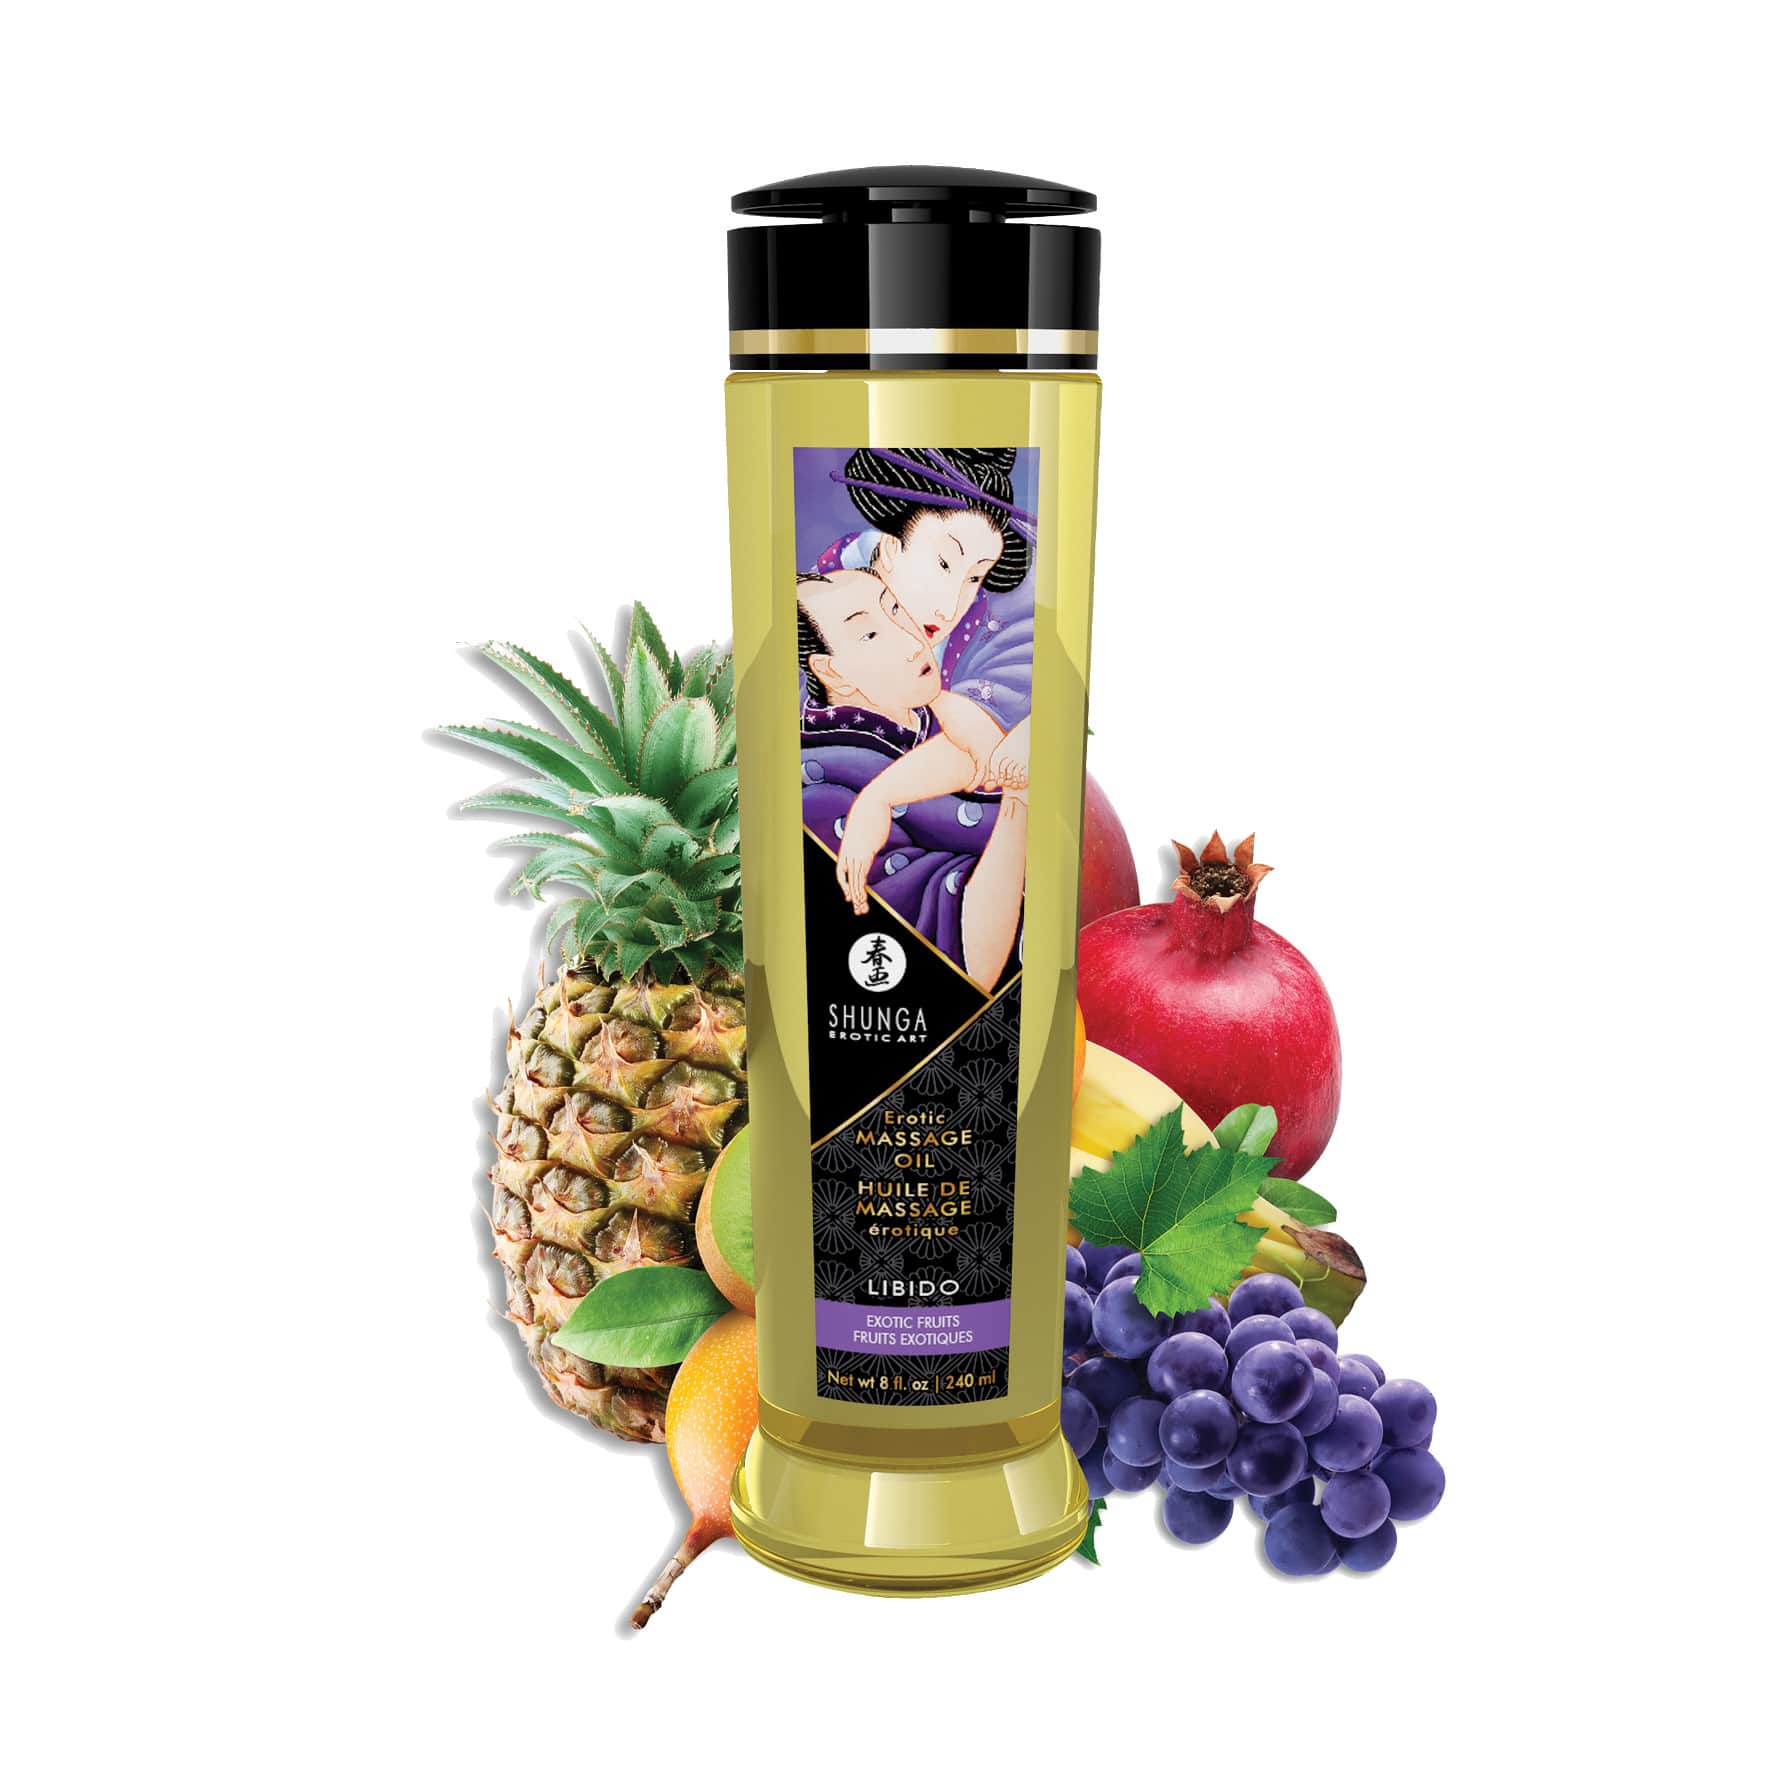 Shunga масло массажное для тела с ароматом Экзотических фруктов, 240 мл.